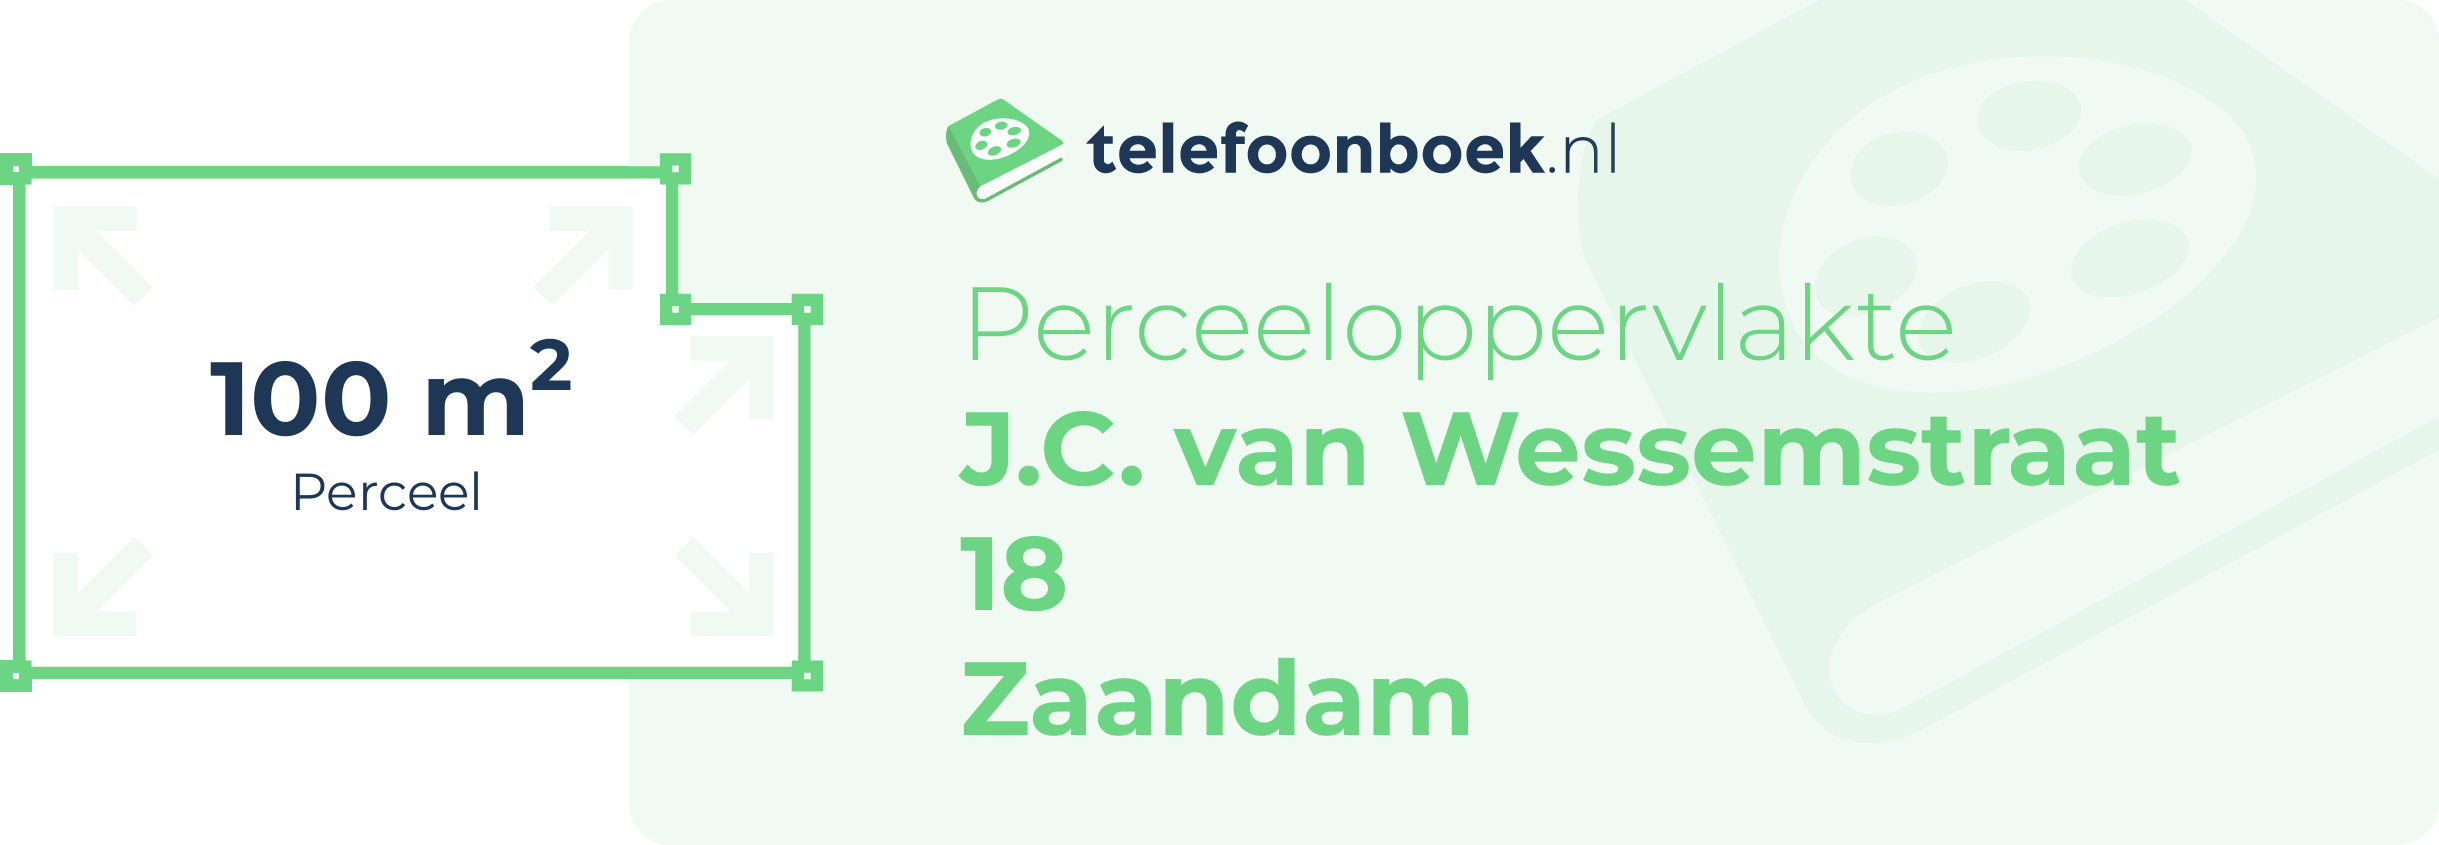 Perceeloppervlakte J.C. Van Wessemstraat 18 Zaandam